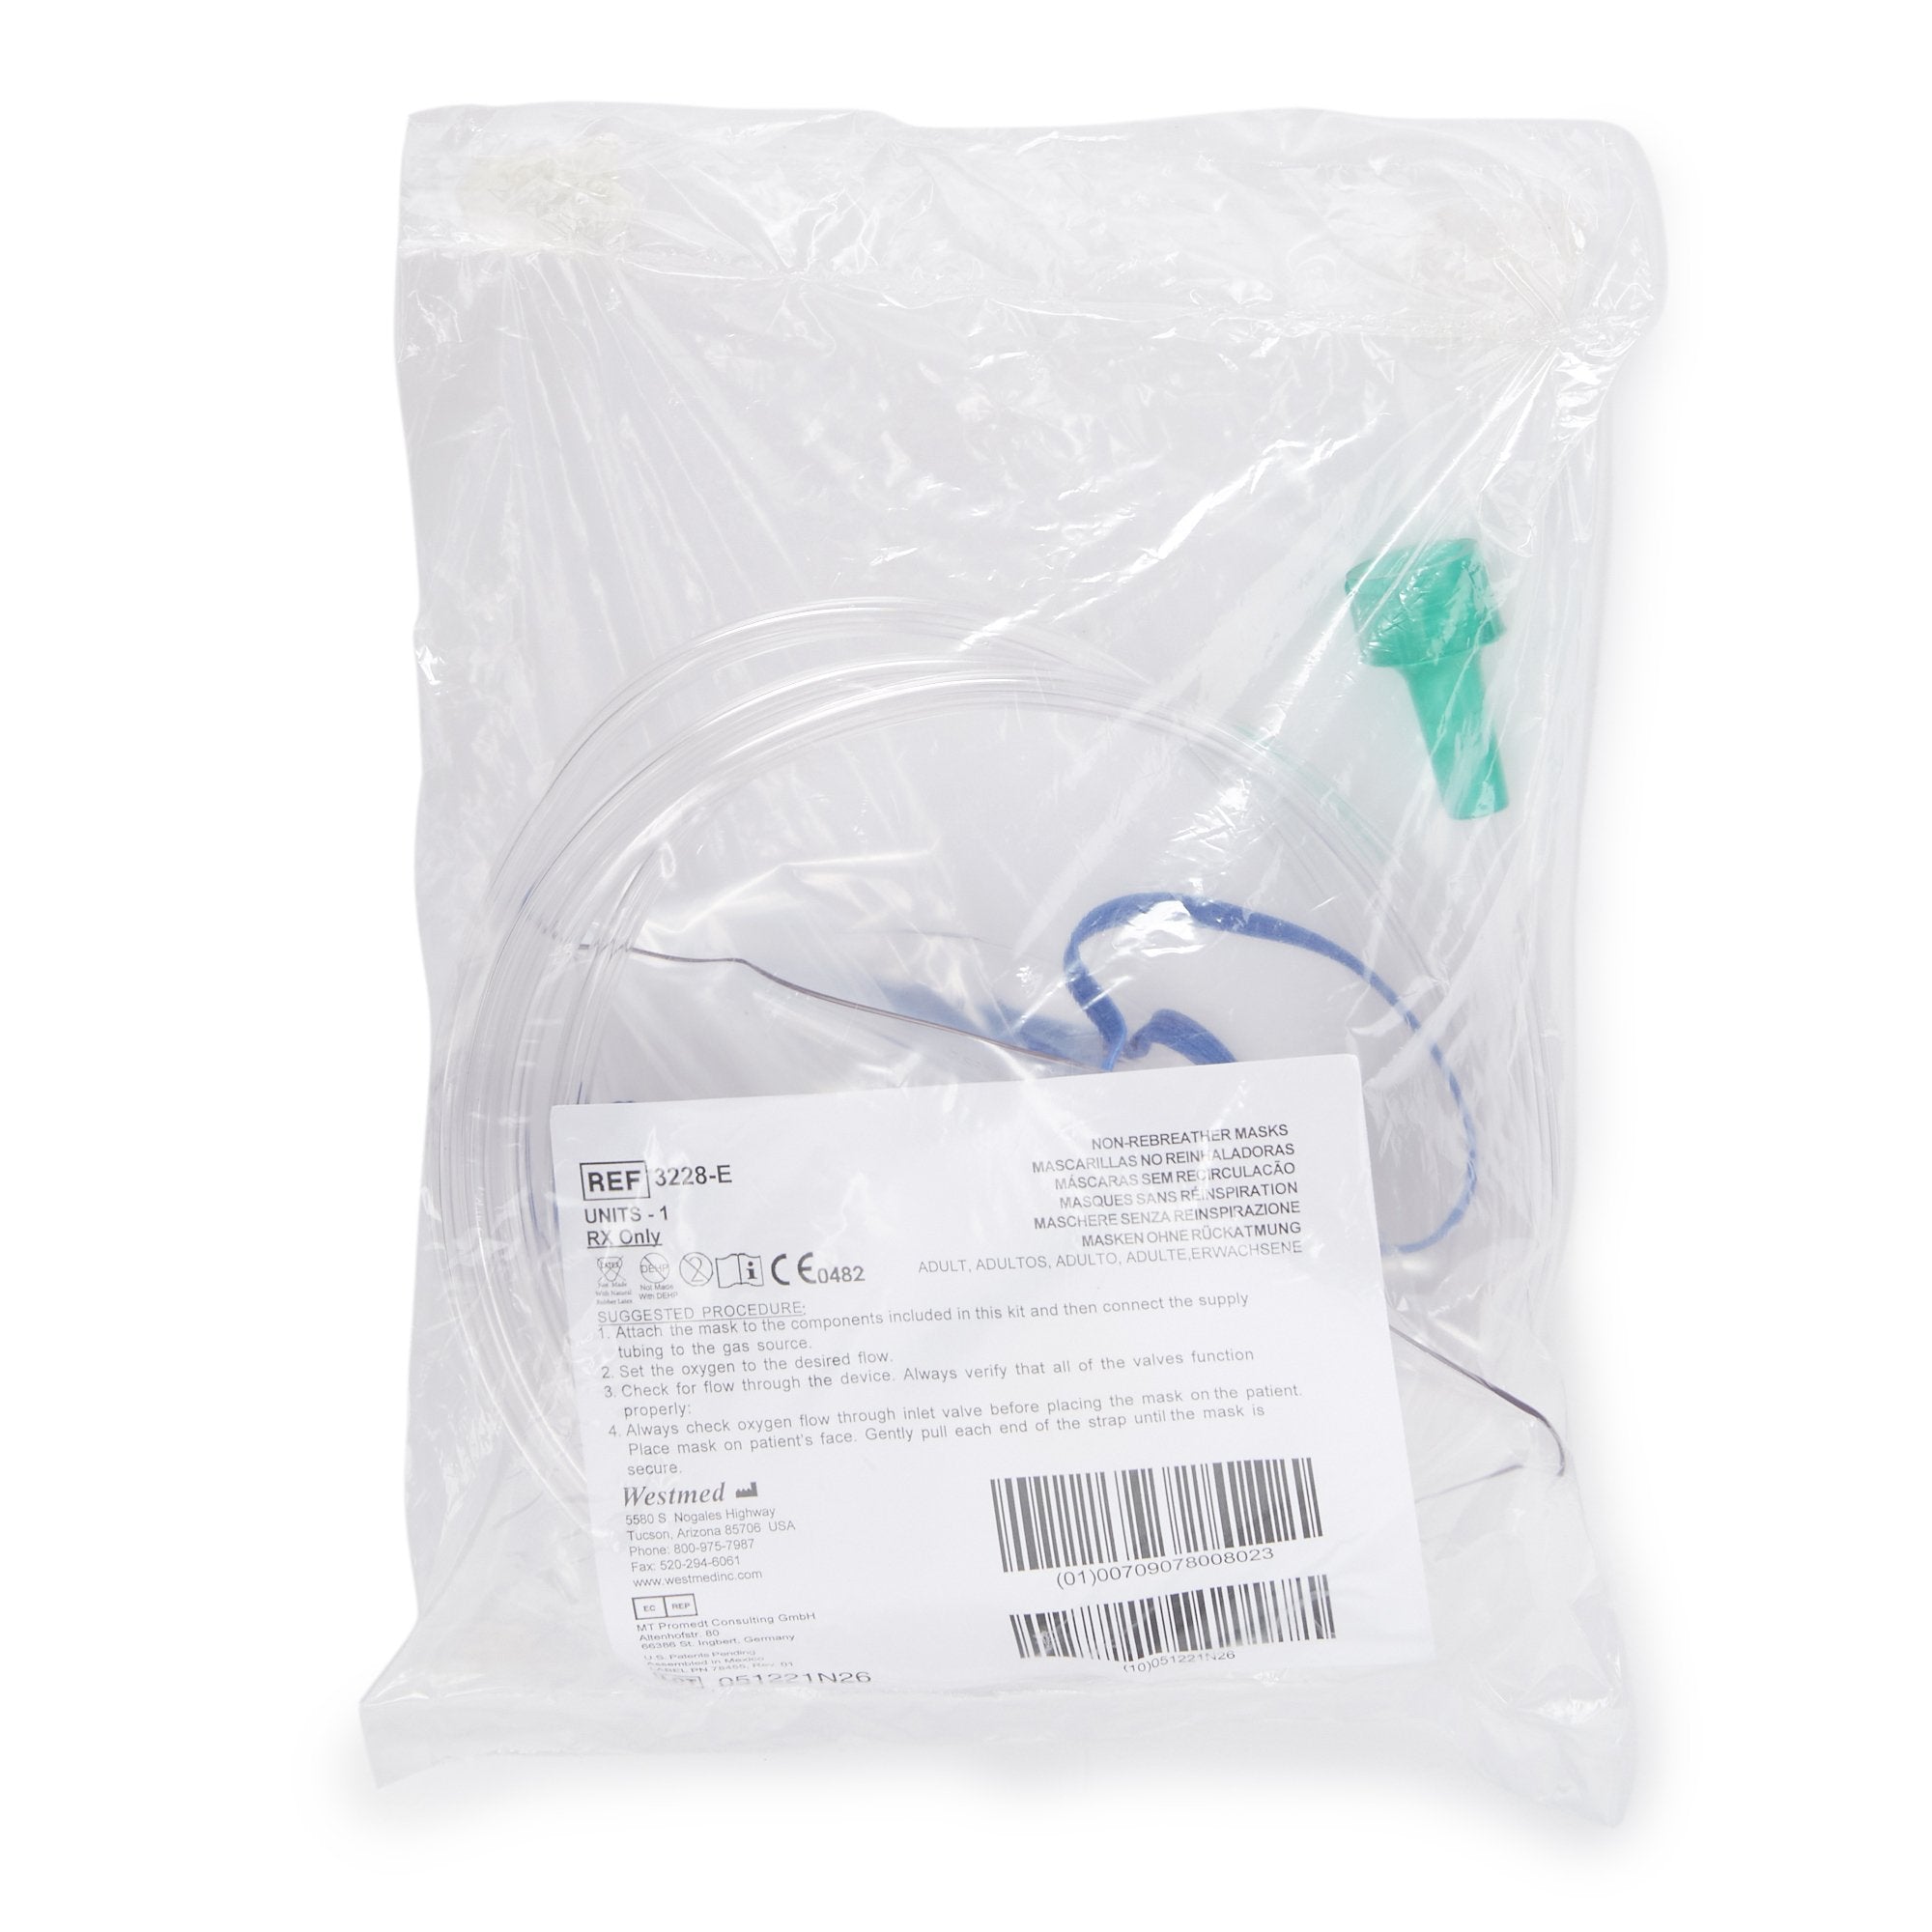 Respiratory>Oxygen Accessories - McKesson - Wasatch Medical Supply